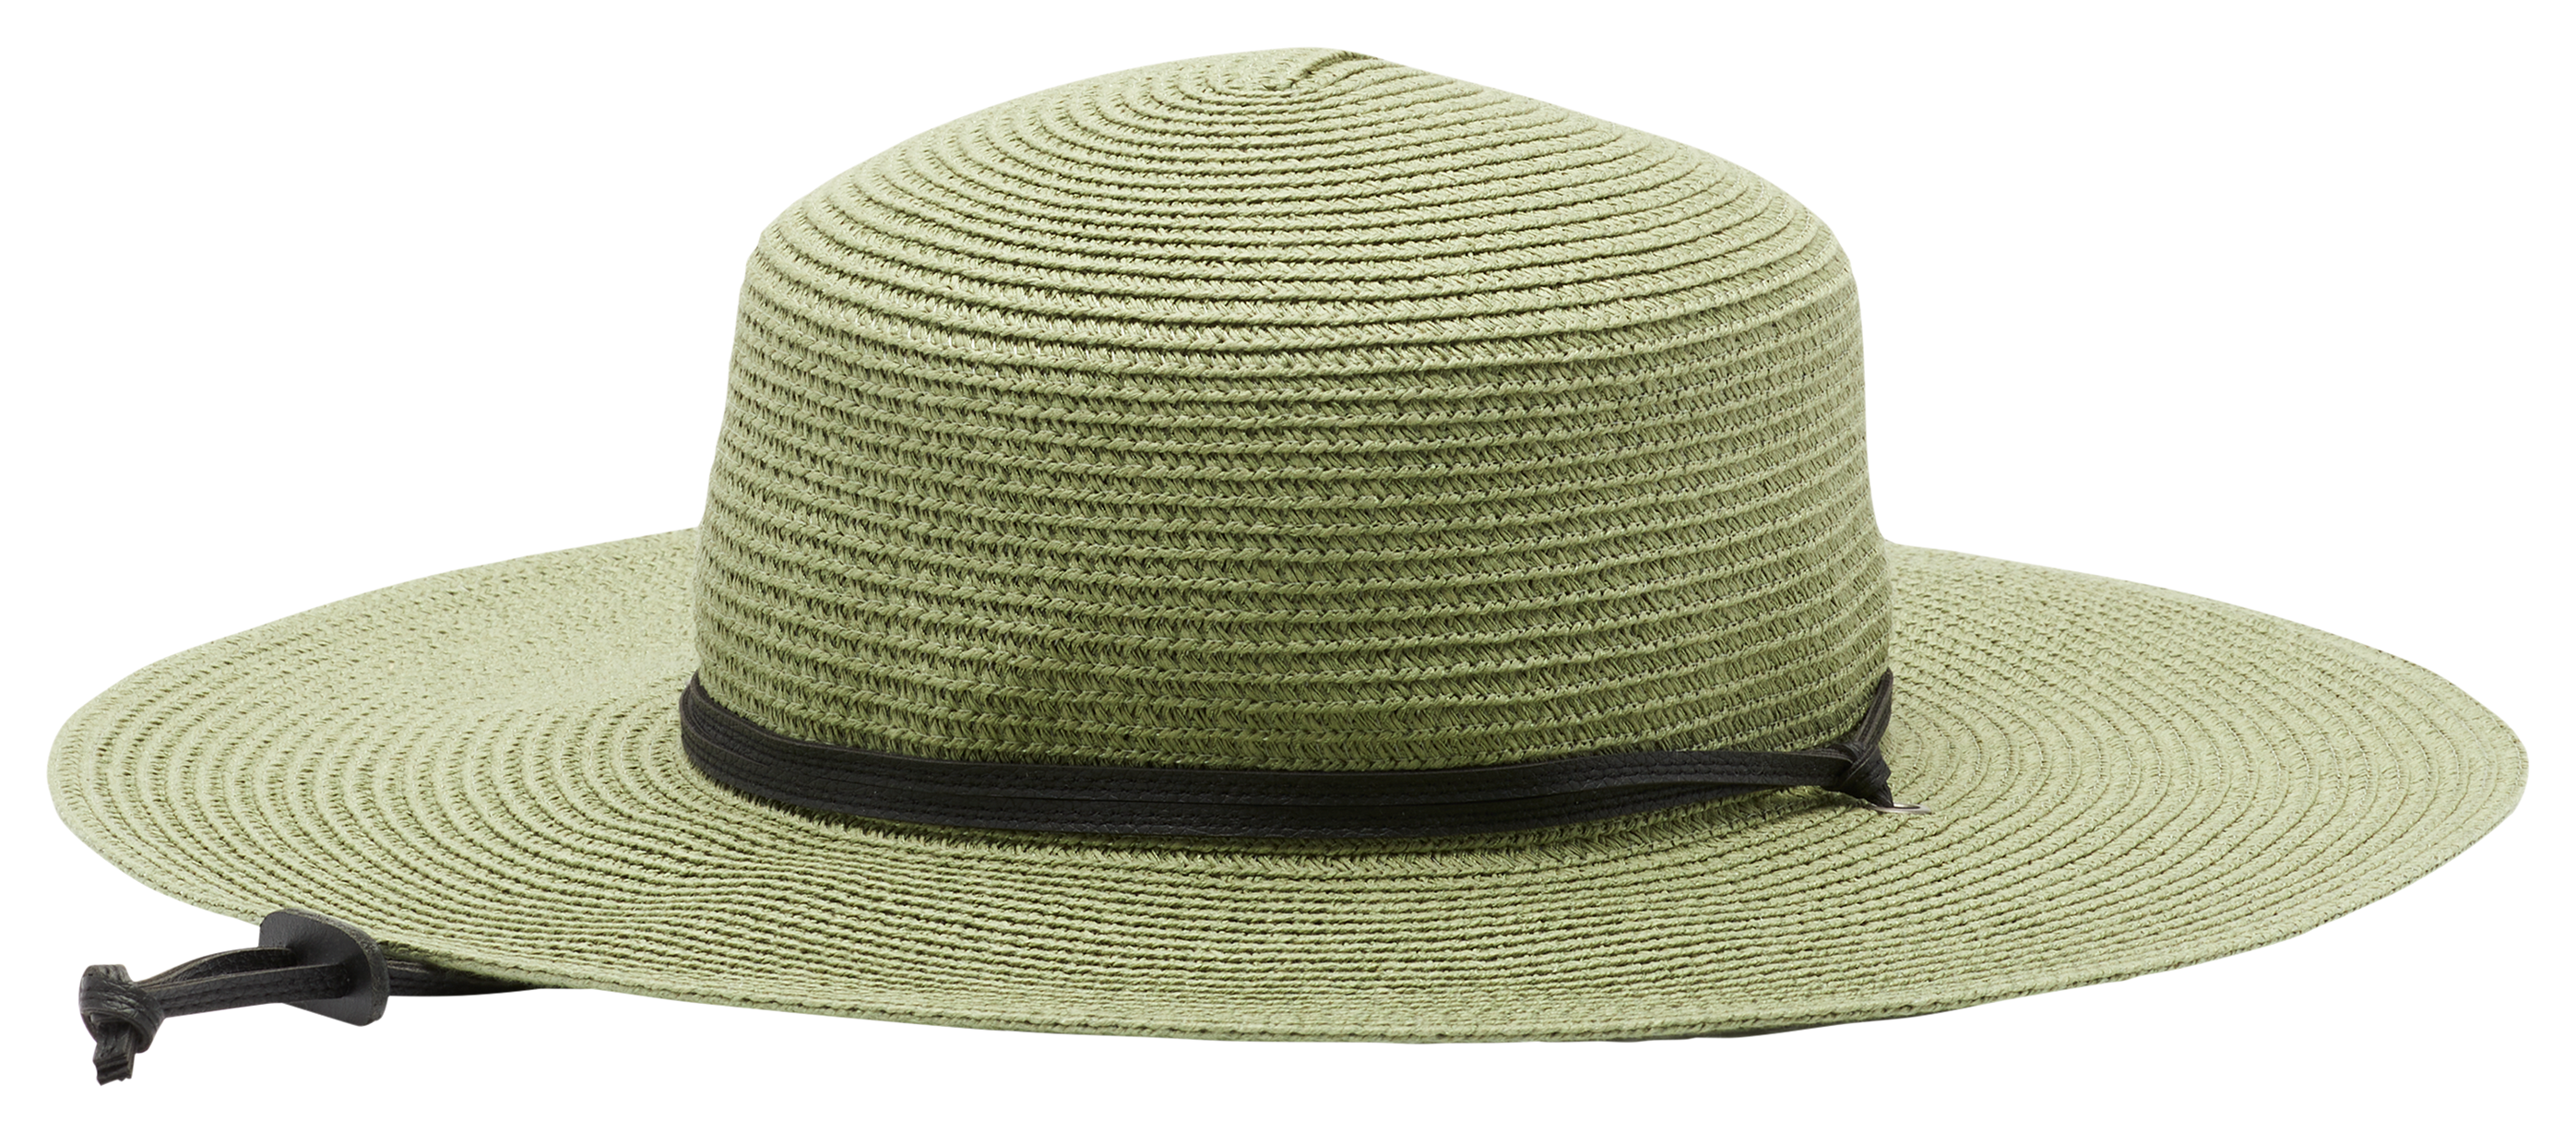 cabela's light hat – shopthewolfpack